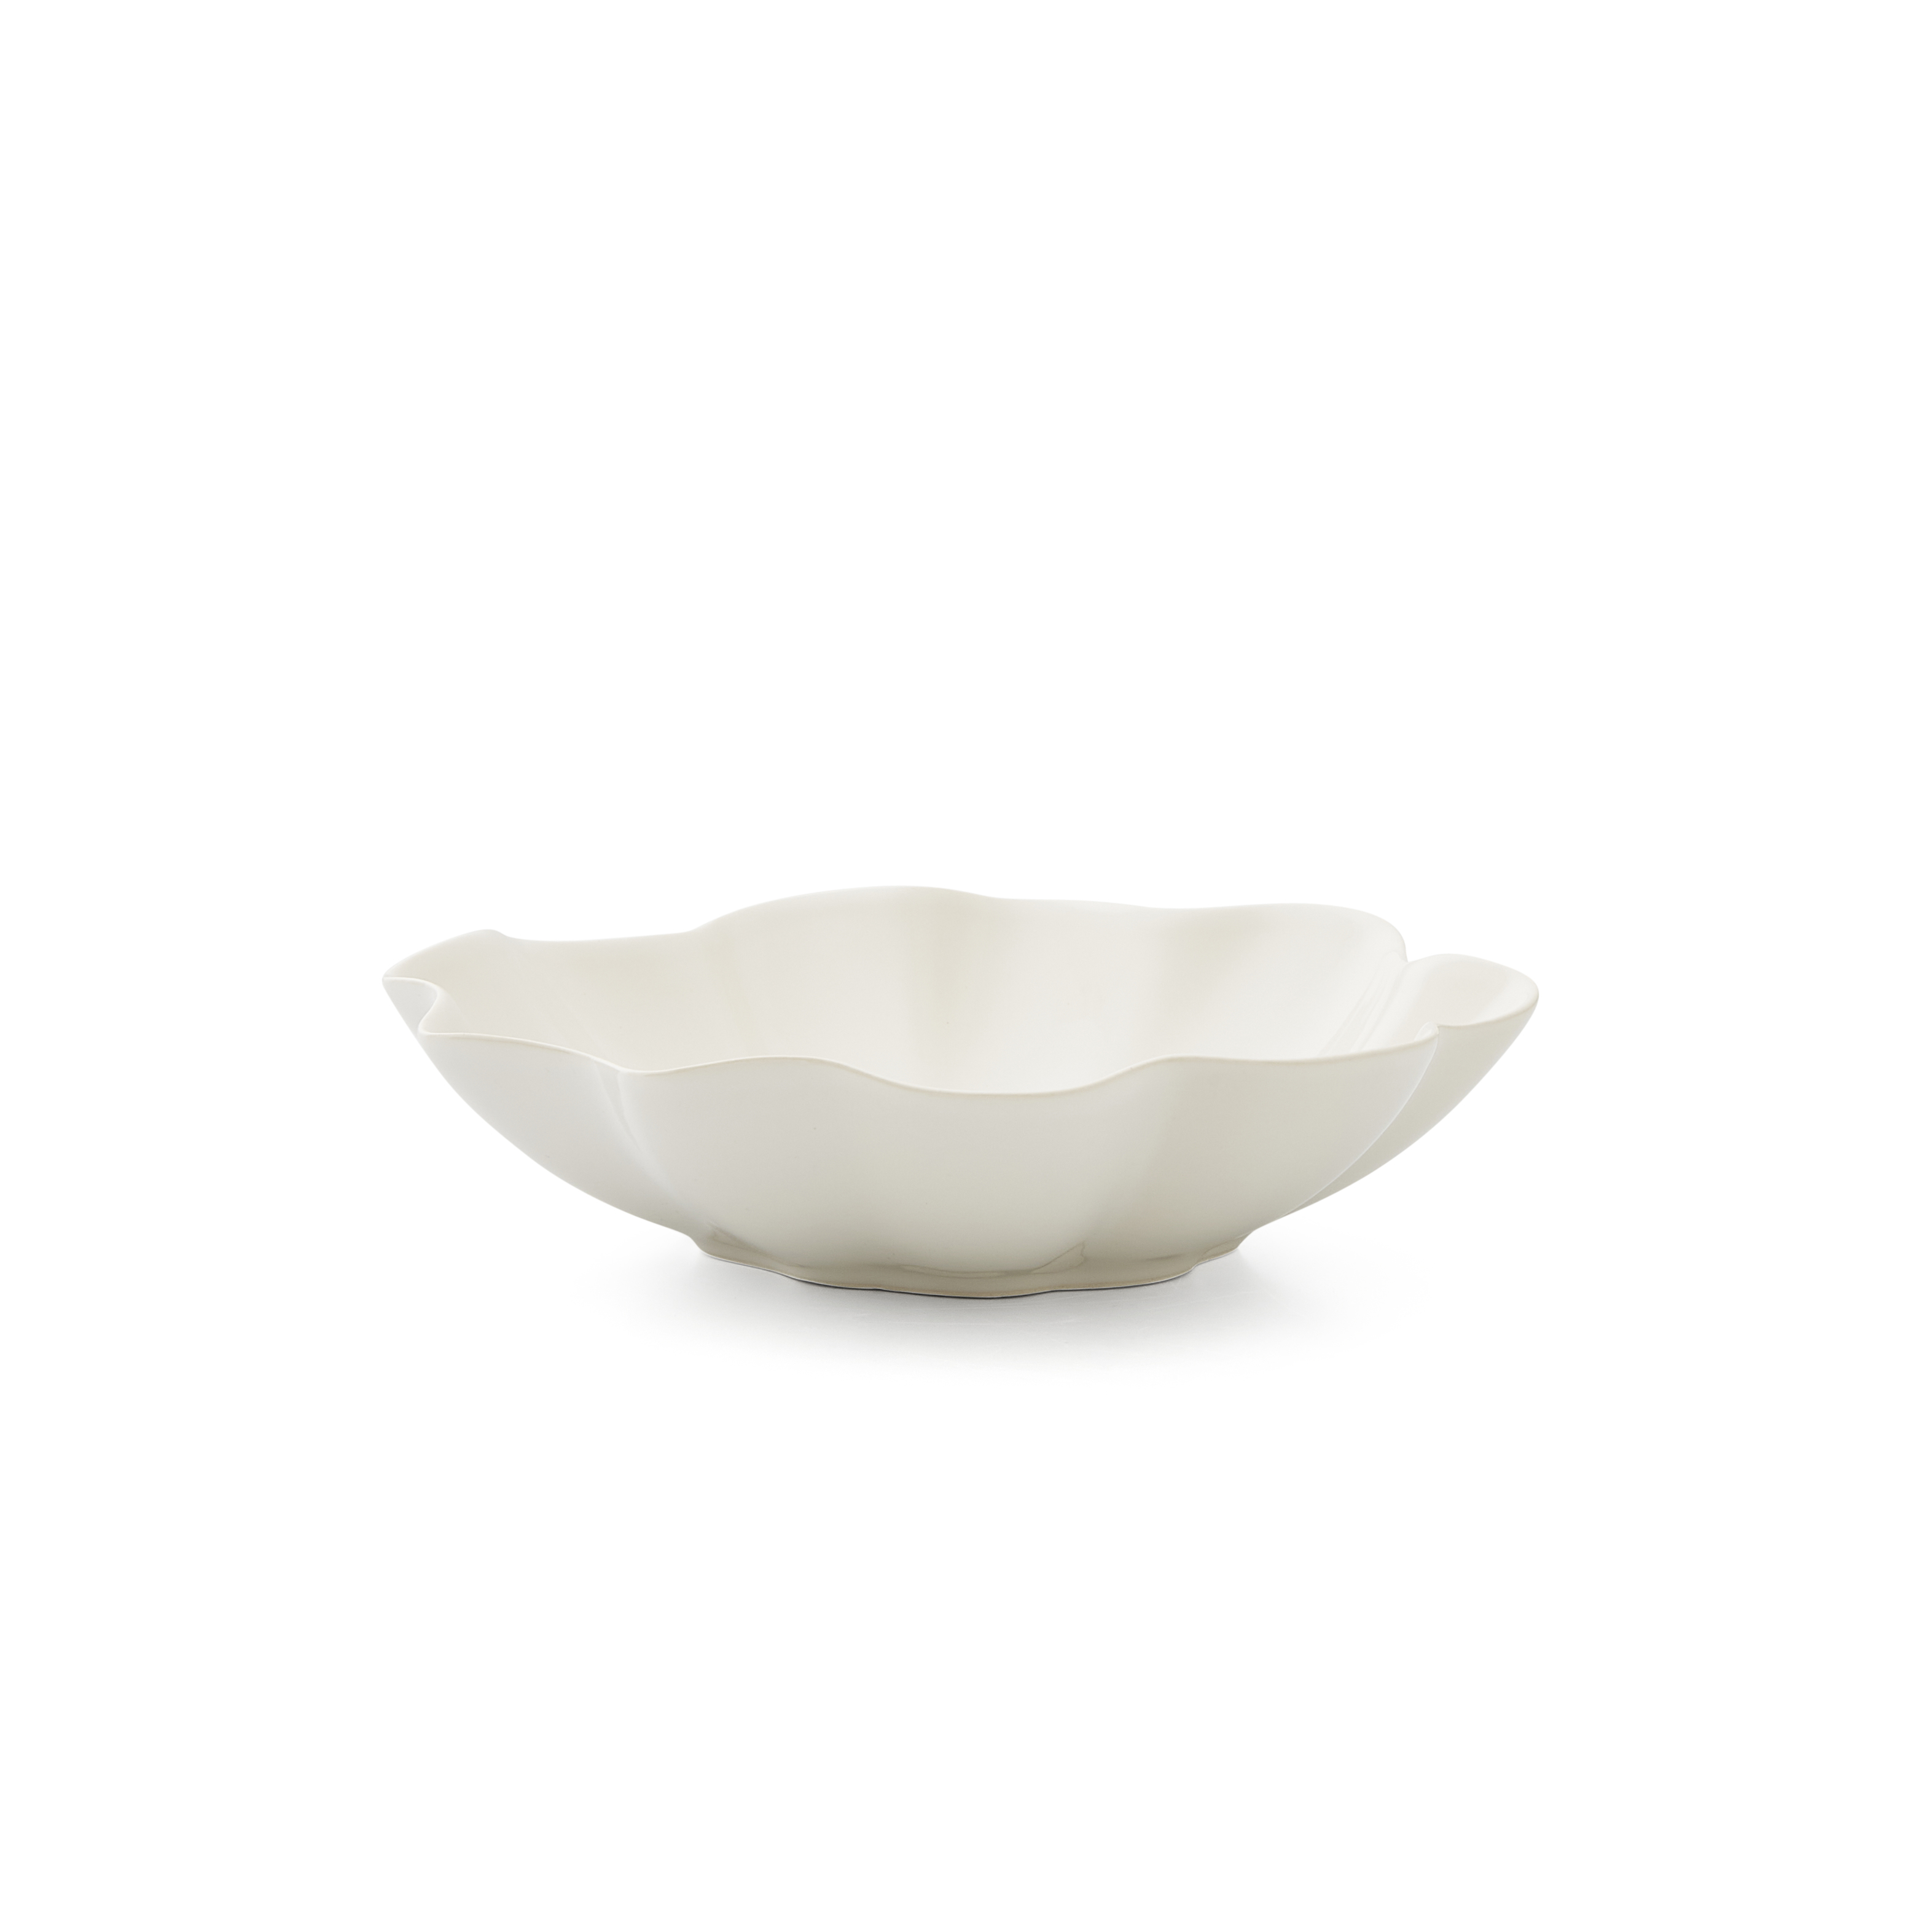 Sophie Conran Floret 9 Inch Pasta Bowl, Cream image number null